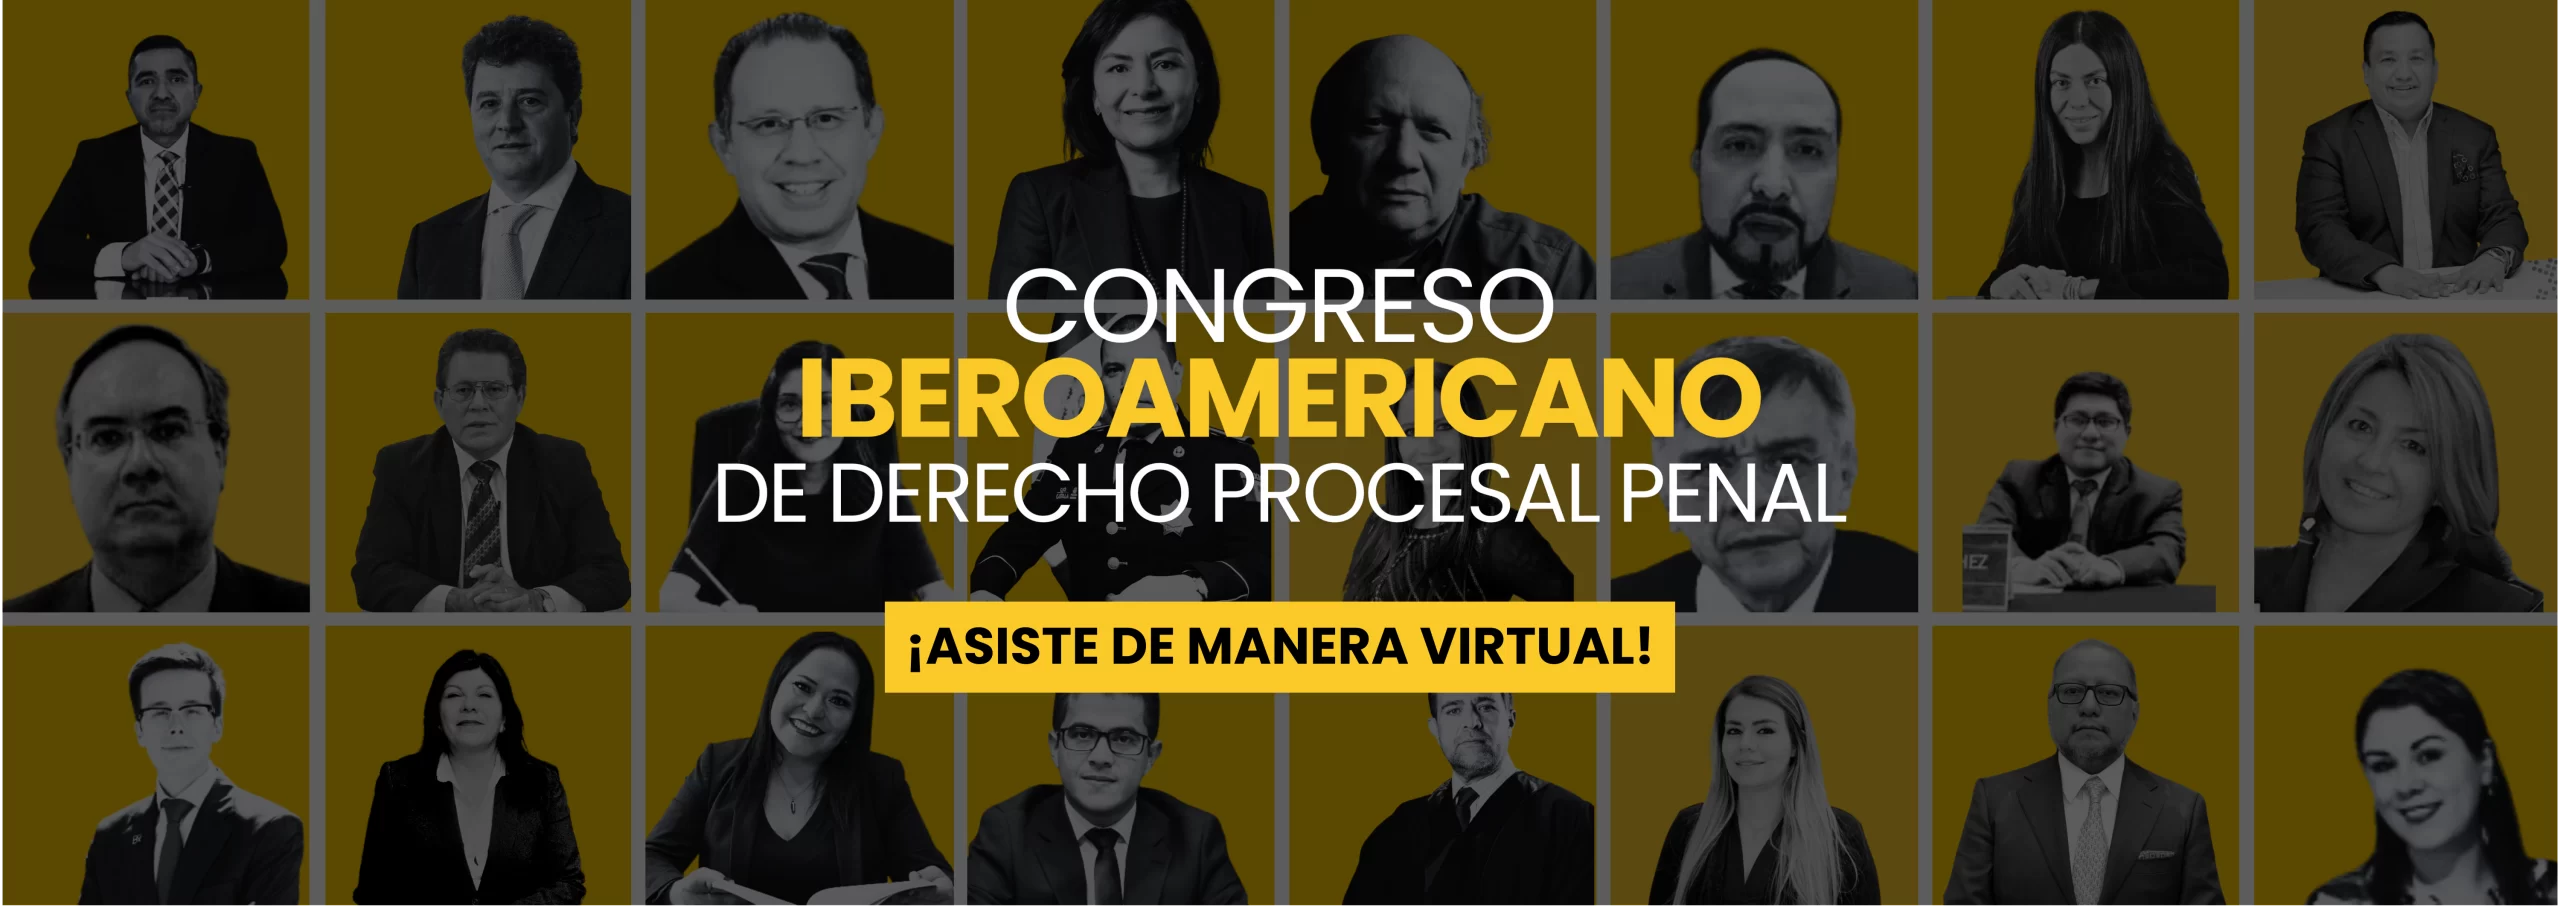 congreso virtual